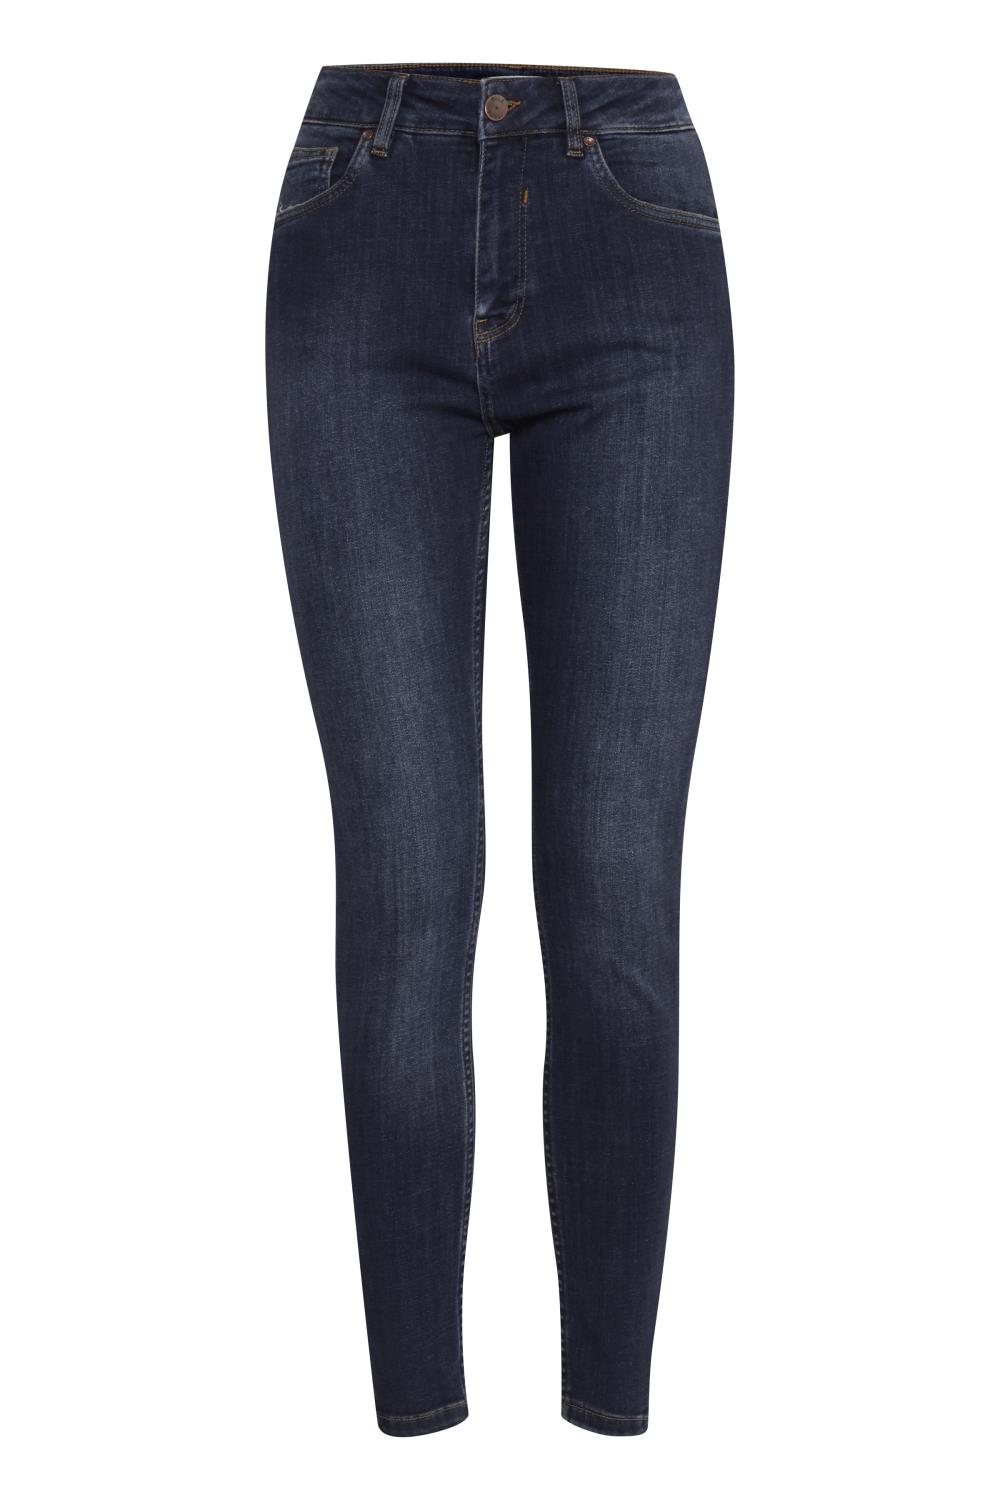 Pulz Emma Jeans, dark blue denim